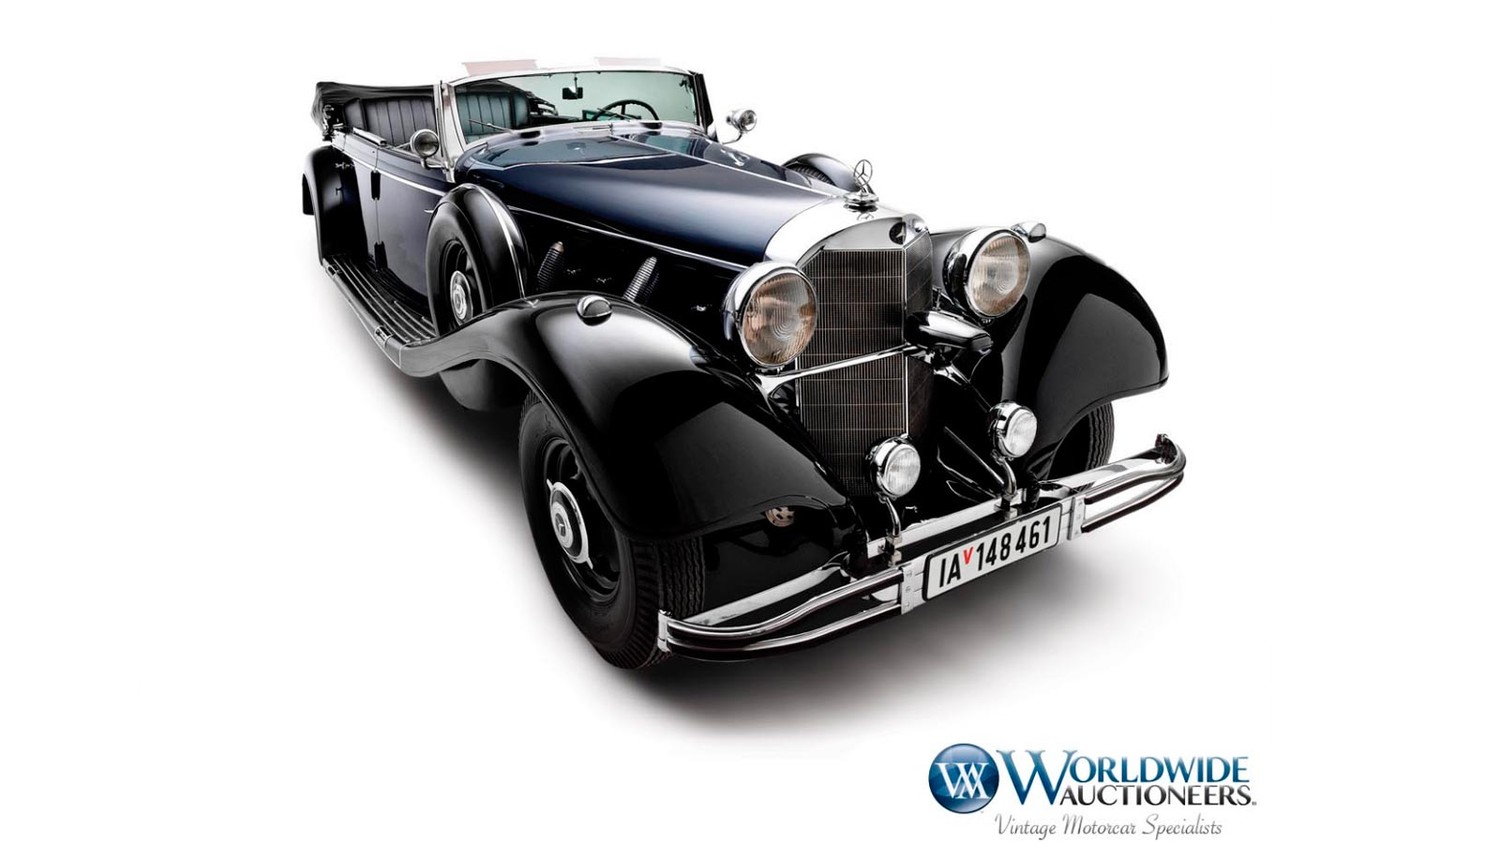 Mercedes-Benz 770K Grosser Open Tourer 1939 года выпуска Гватемальского парада идет на аукцион